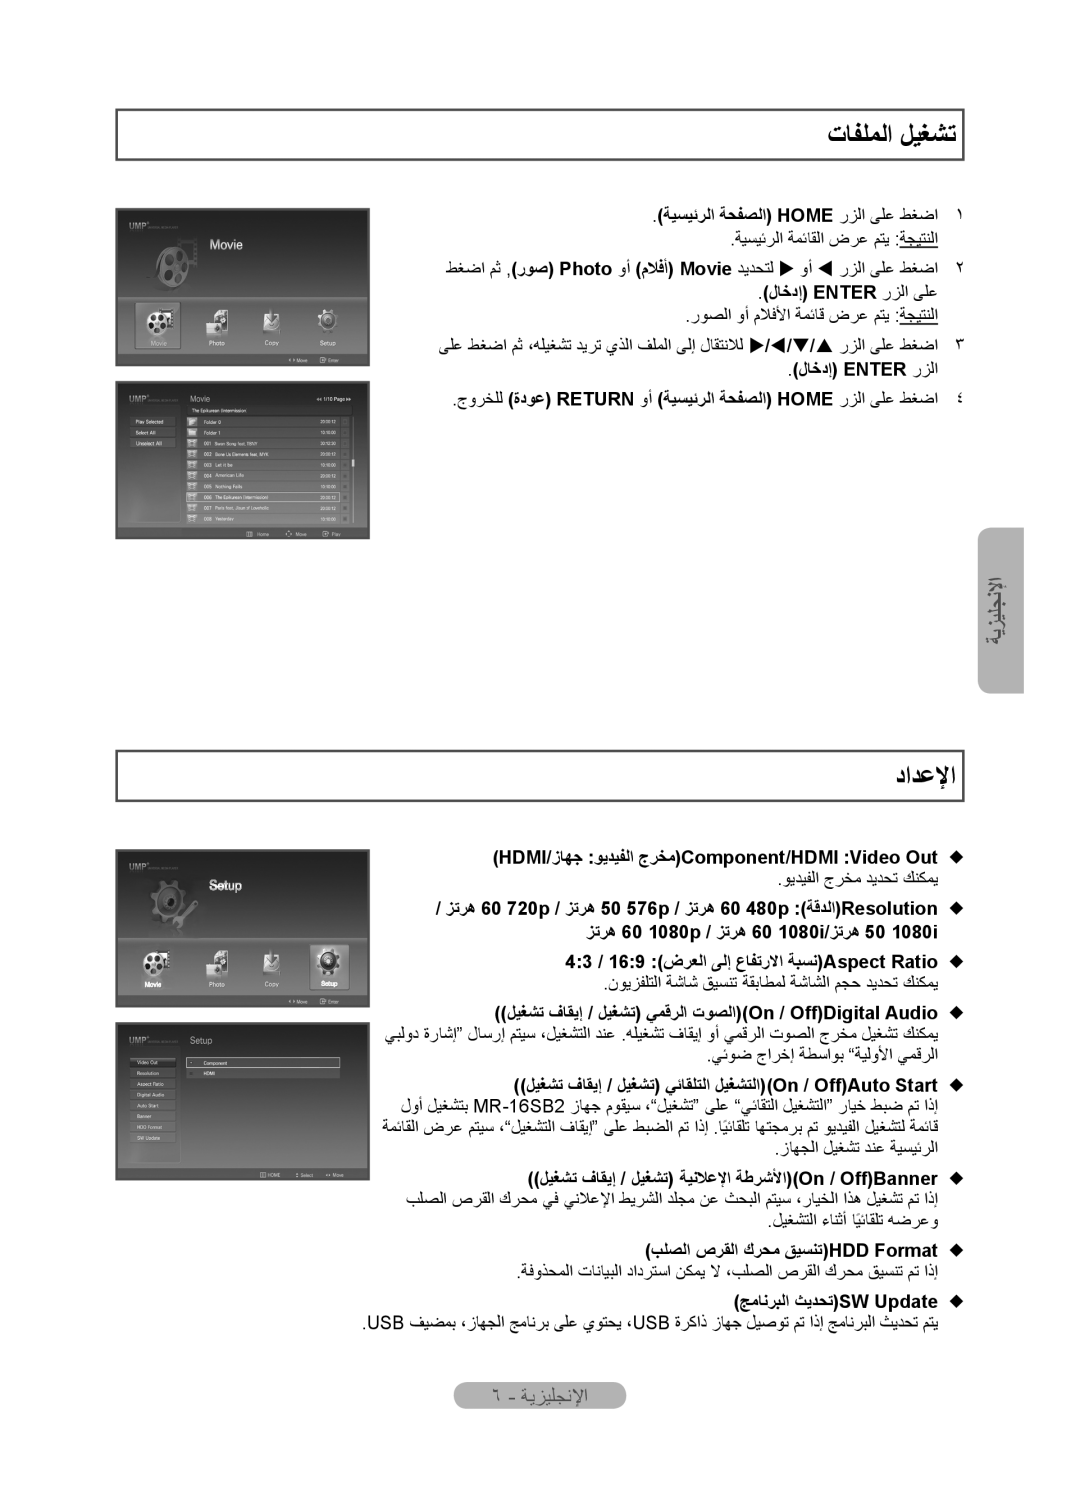 Samsung MR-16SB2 manual ﺕﺎﻔﻠﻤﻟﺍ ﻞﻴﻐﺸﺗ, ﺩﺍﺪﻋﻹﺍ, ٦ - ﺔﻳﺰﻴﻠﺠﻧﻹﺍ, ﺔﻴﺴﻴﺋﺮﻟﺍ ﺔﺤﻔﺼﻟﺍ Home ﺭﺰﻟﺍ ﻰﻠﻋ ﻂﻐﺿﺍ, ﻝﺎﺧﺩﺇ Enter ﺭﺰﻟﺍ ﻰﻠﻋ 